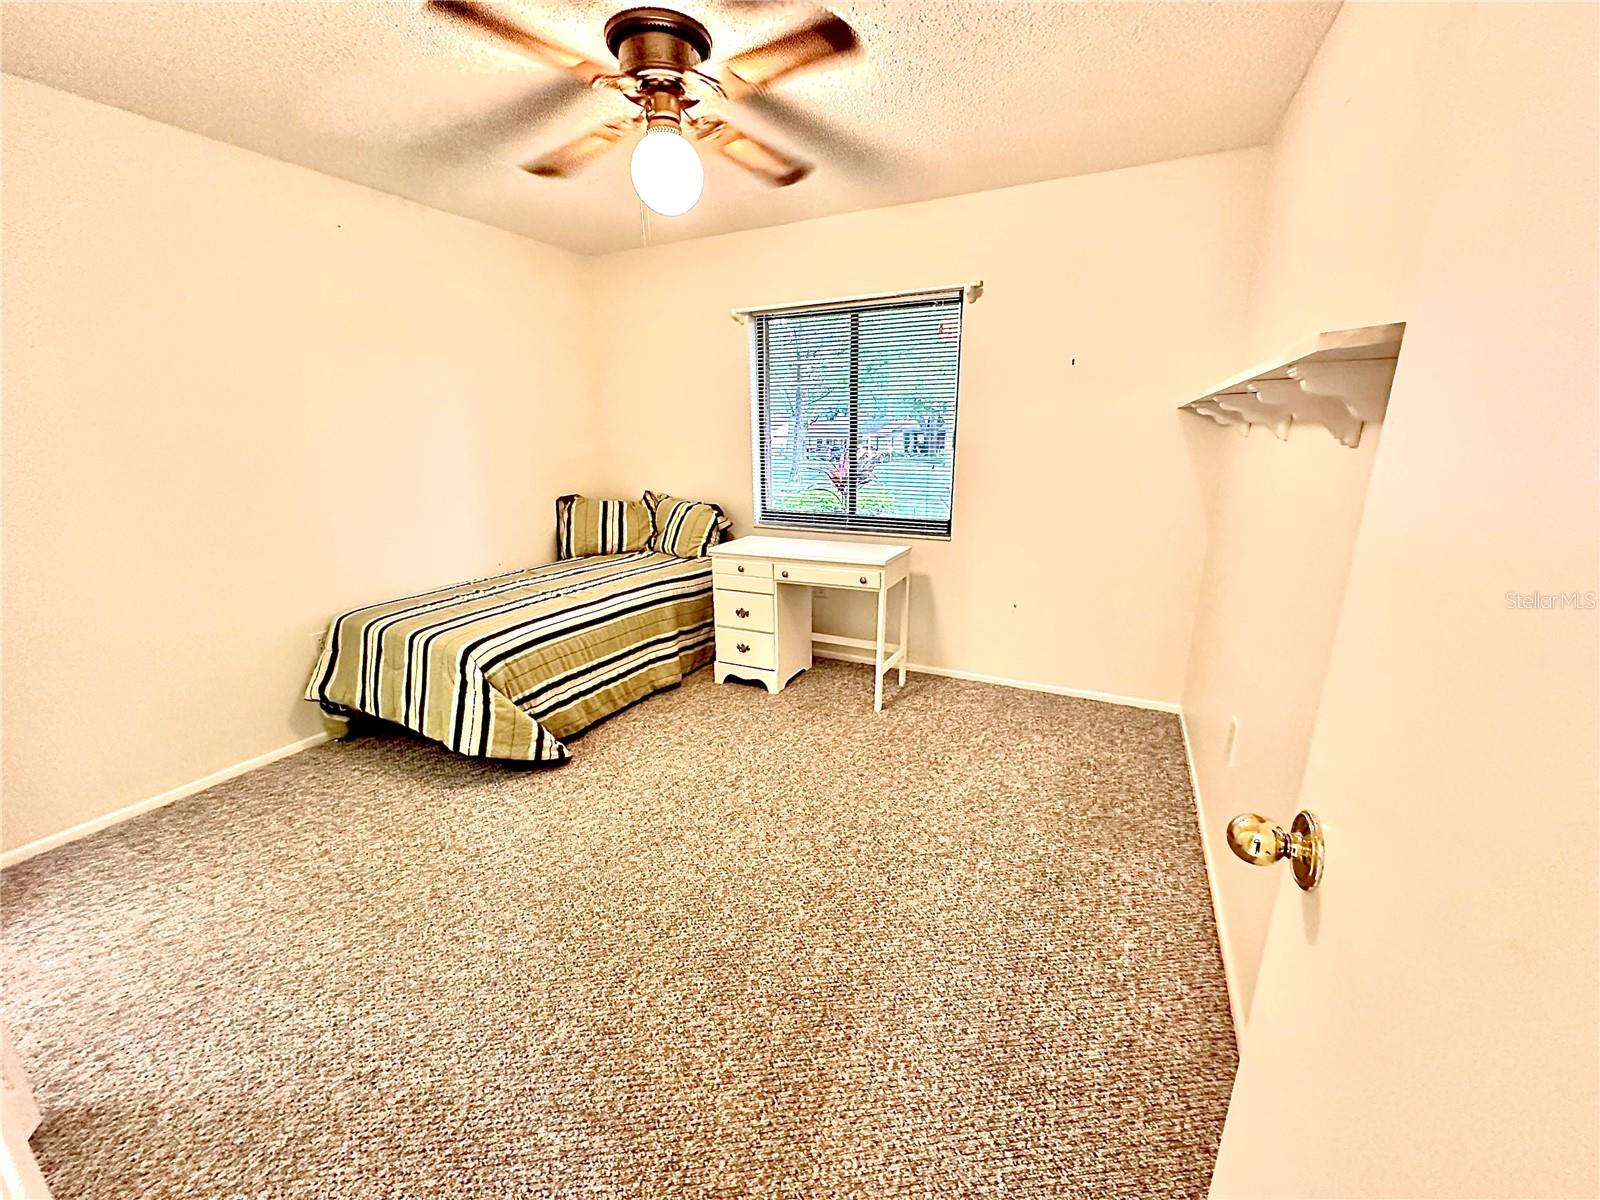 guest Bedroom. Berber carpet. ceiling fan.